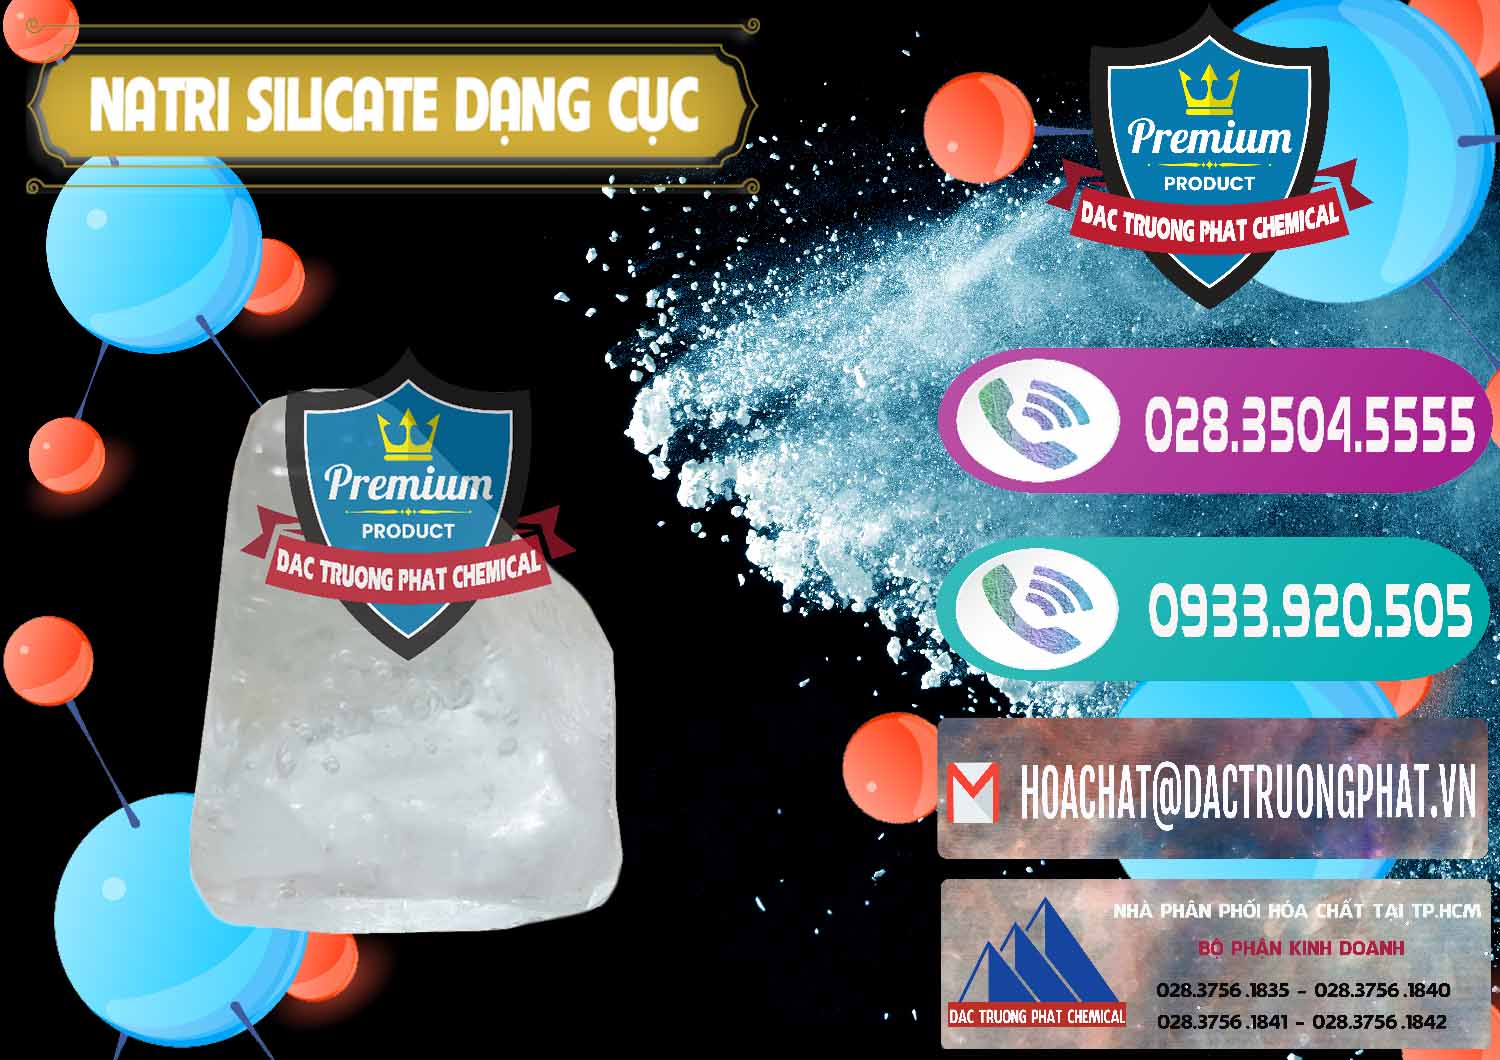 Nơi cung ứng _ bán Natri Silicate - Na2SiO3 - Keo Silicate Dạng Cục Ấn Độ India - 0382 - Cty phân phối và cung cấp hóa chất tại TP.HCM - hoachatxulynuoc.com